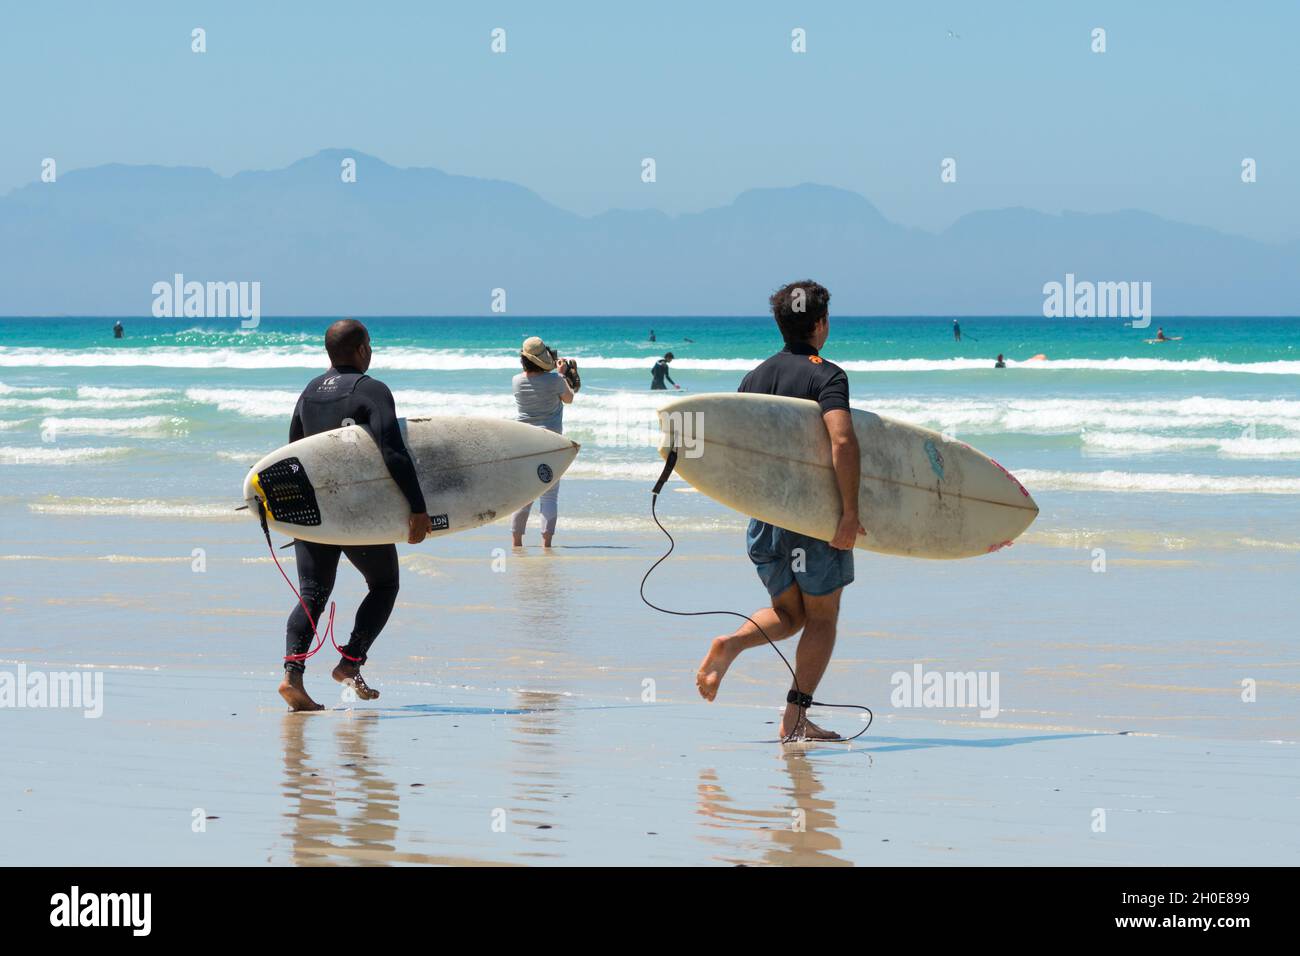 Les surfeurs courent dans la mer et les vagues à la plage de Muizenberg, au Cap occidental, en Afrique du Sud, tenant des planches de surf sous leurs bras Banque D'Images